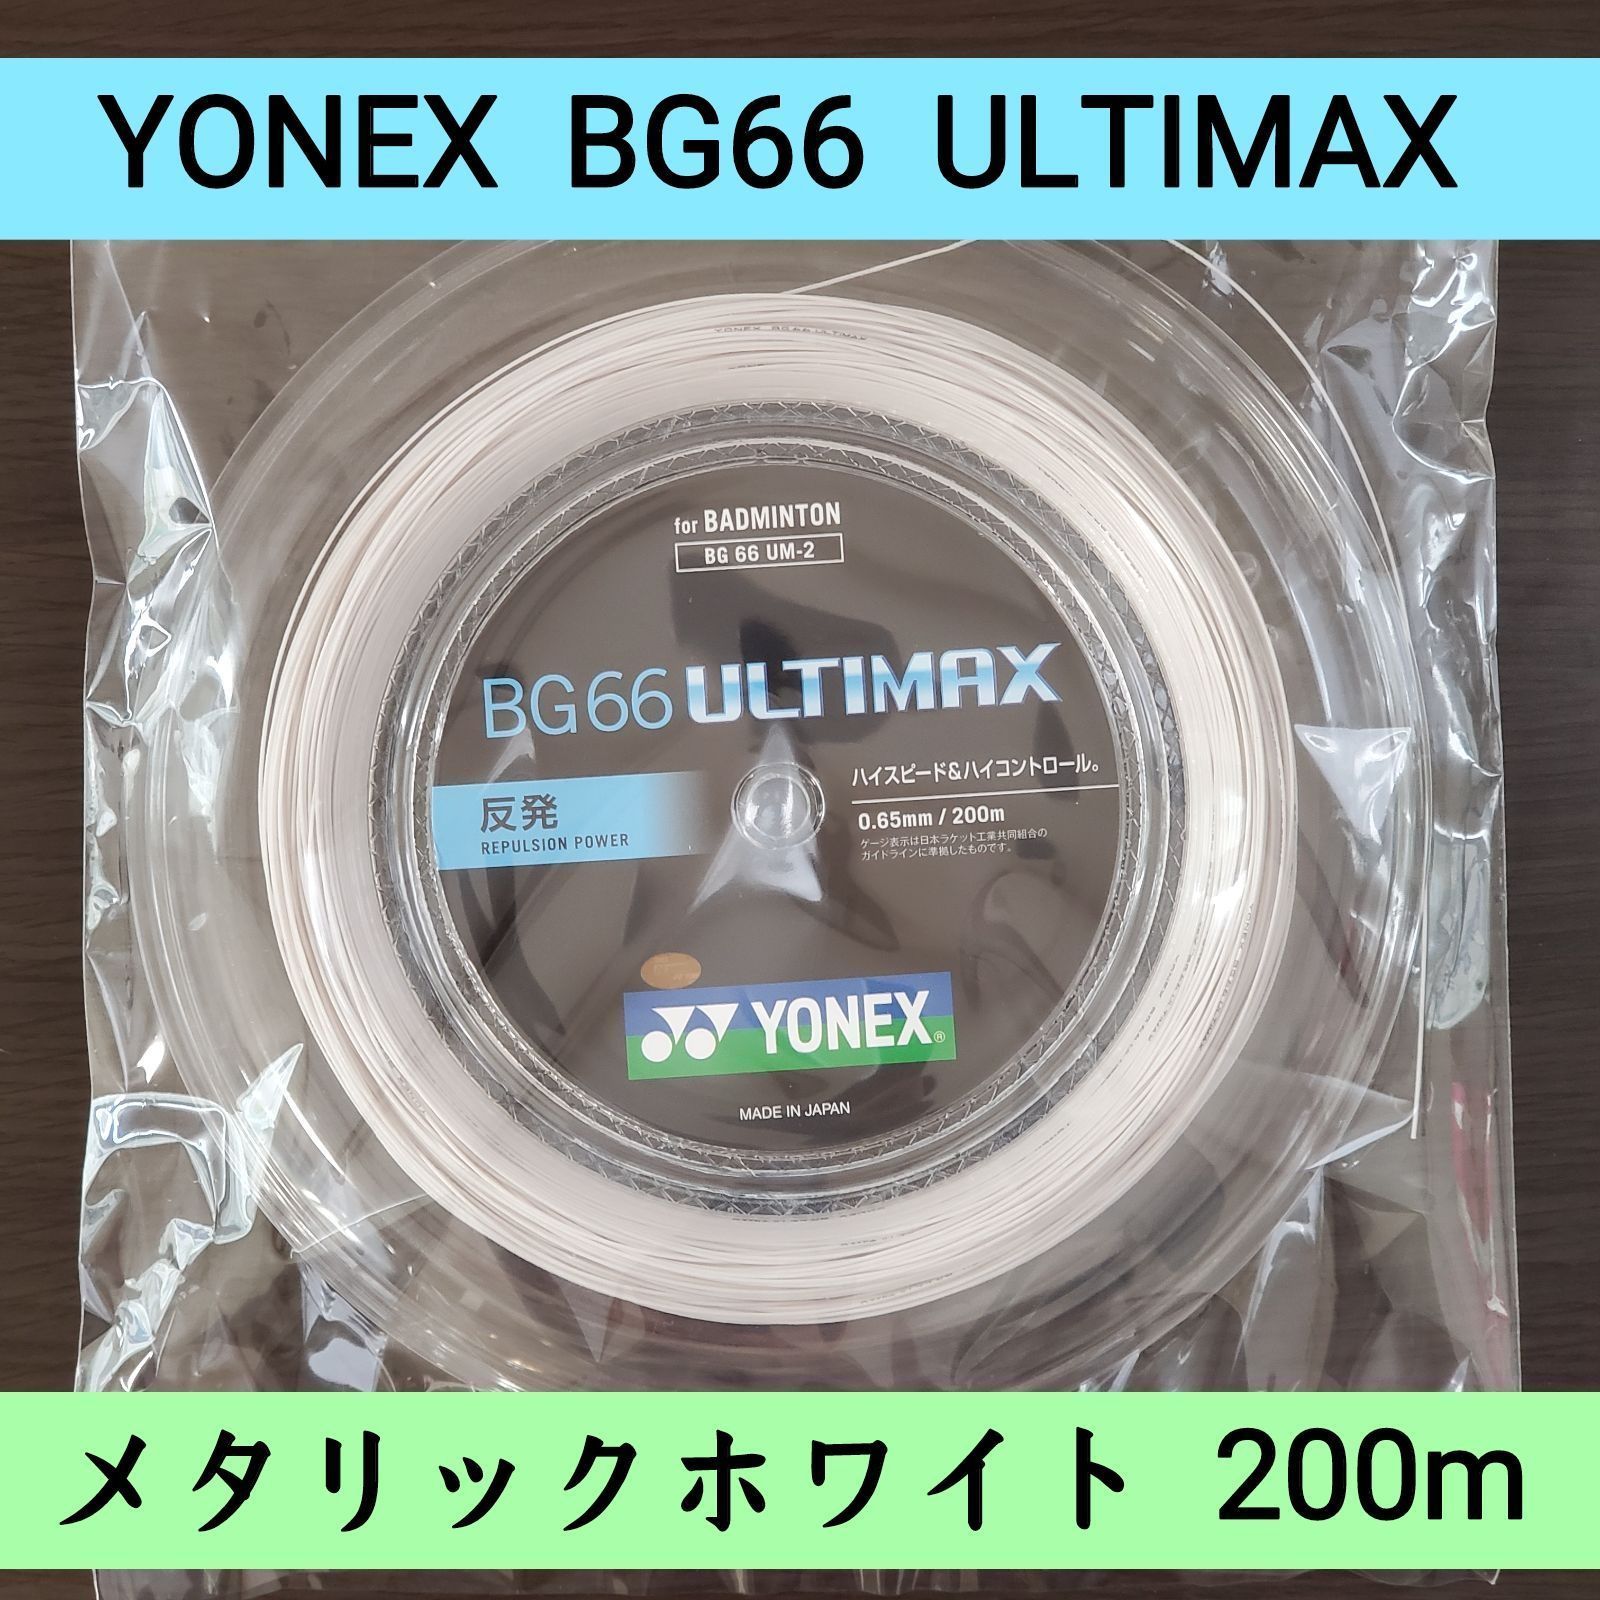 7,750円BG66 ULTIMAX(アルティマックス) 200Mロールストリング